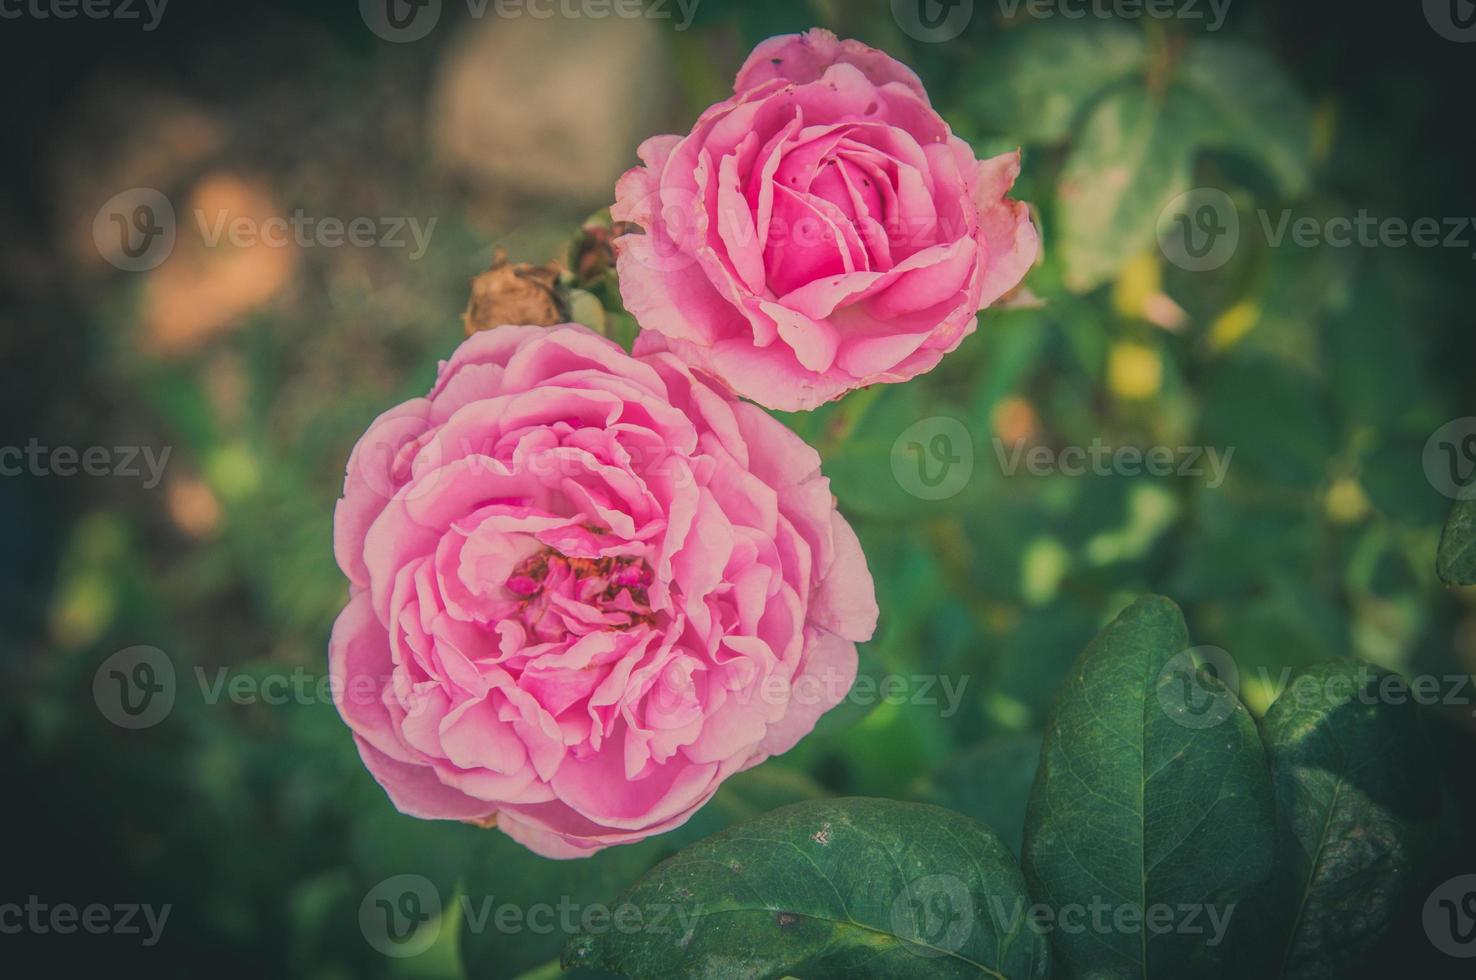 flores rosas no desenho de tons escuros naturais. a imagem é a arte foto